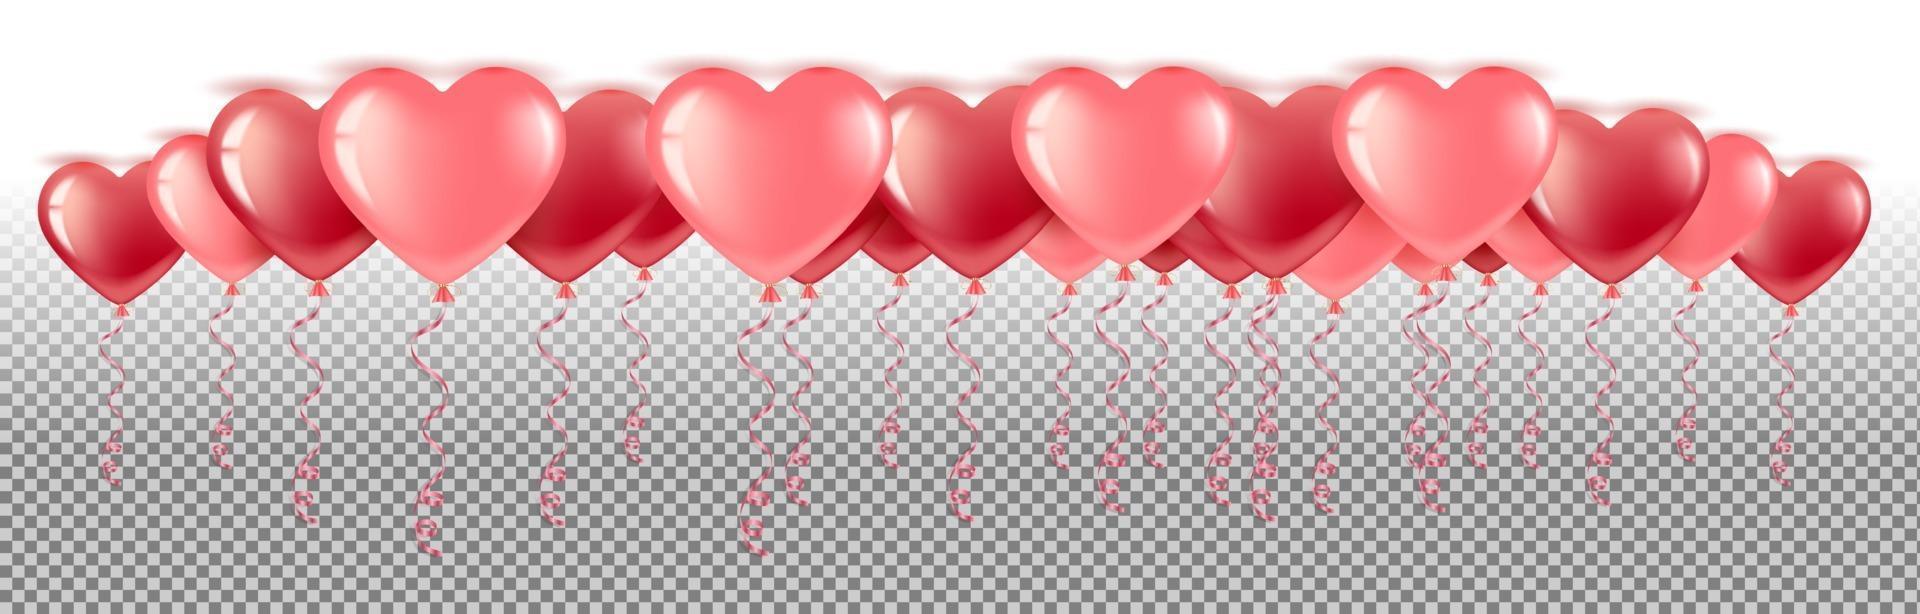 Many heart balloons vector